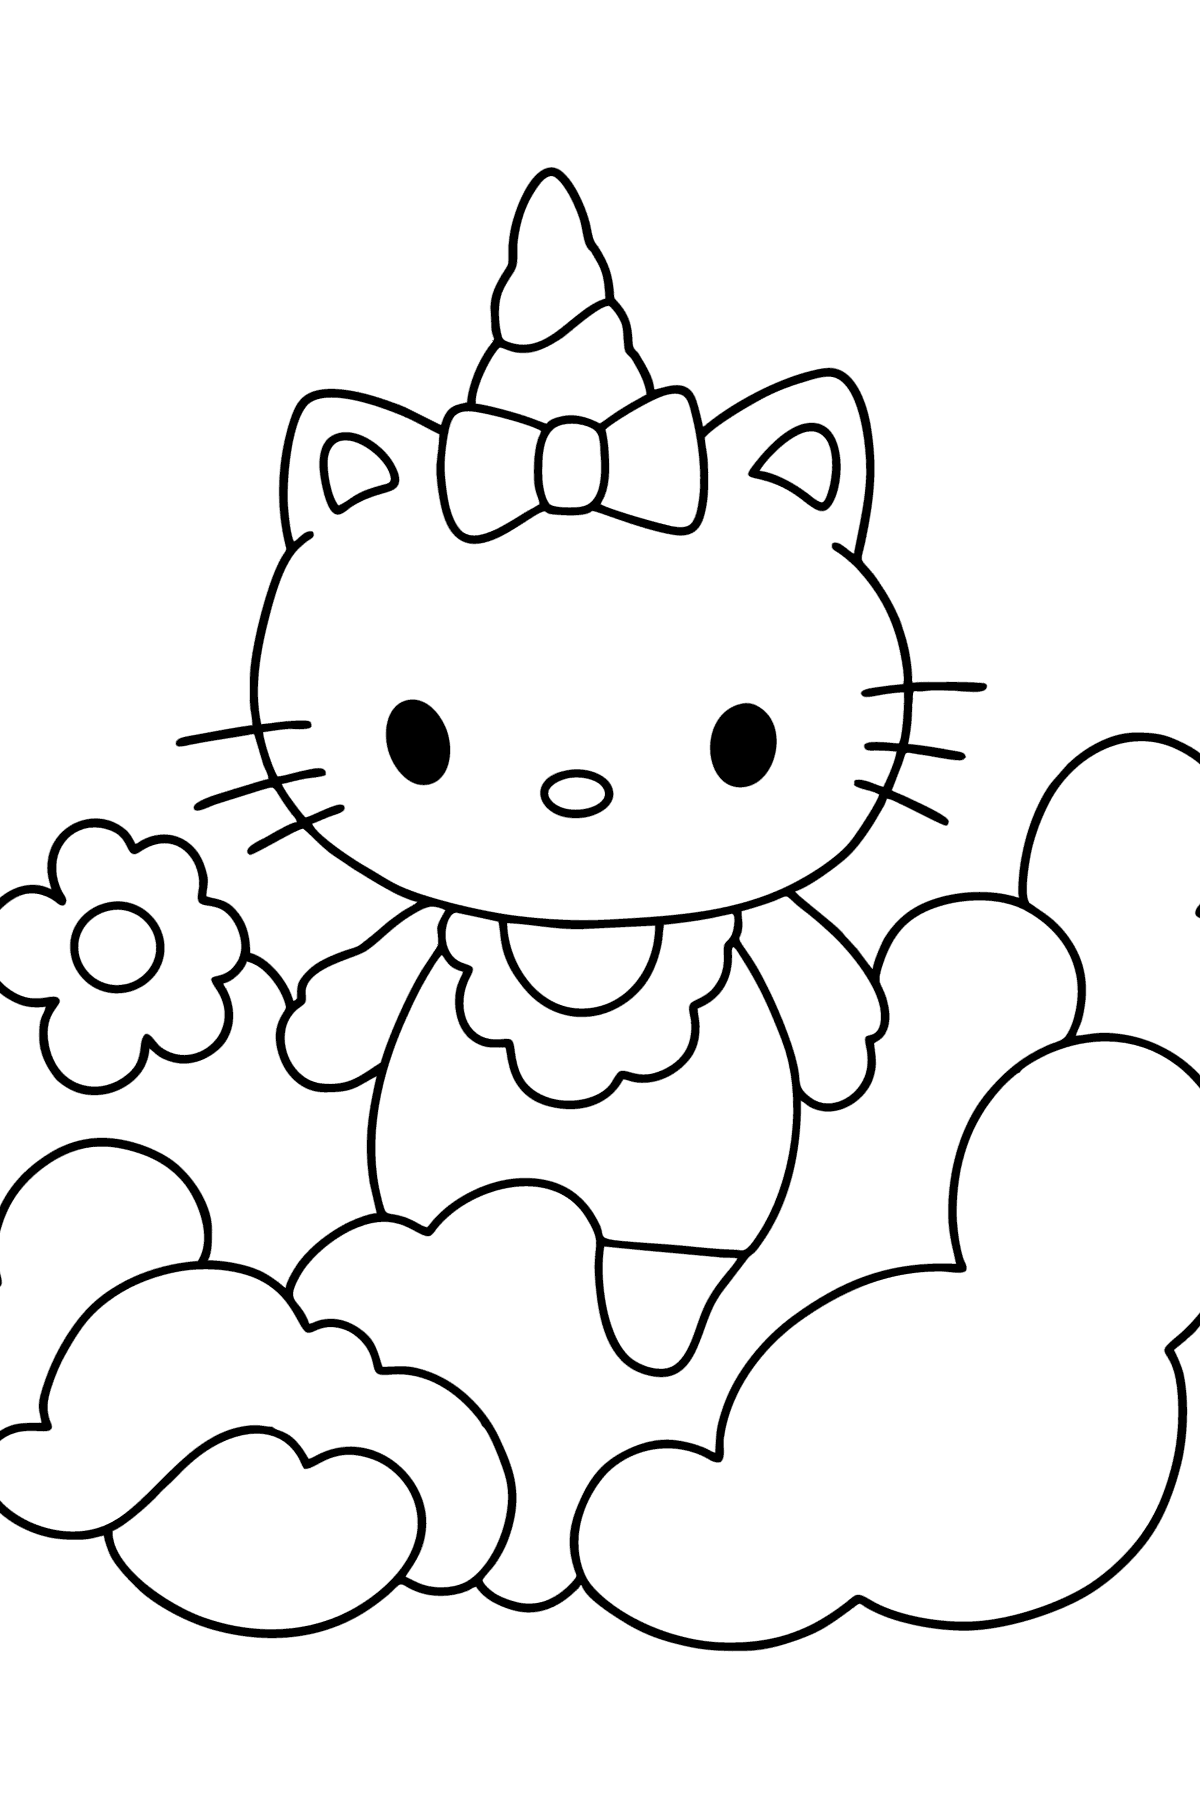 Kleurplaat Hello Kitty eenhoorn - kleurplaten voor kinderen